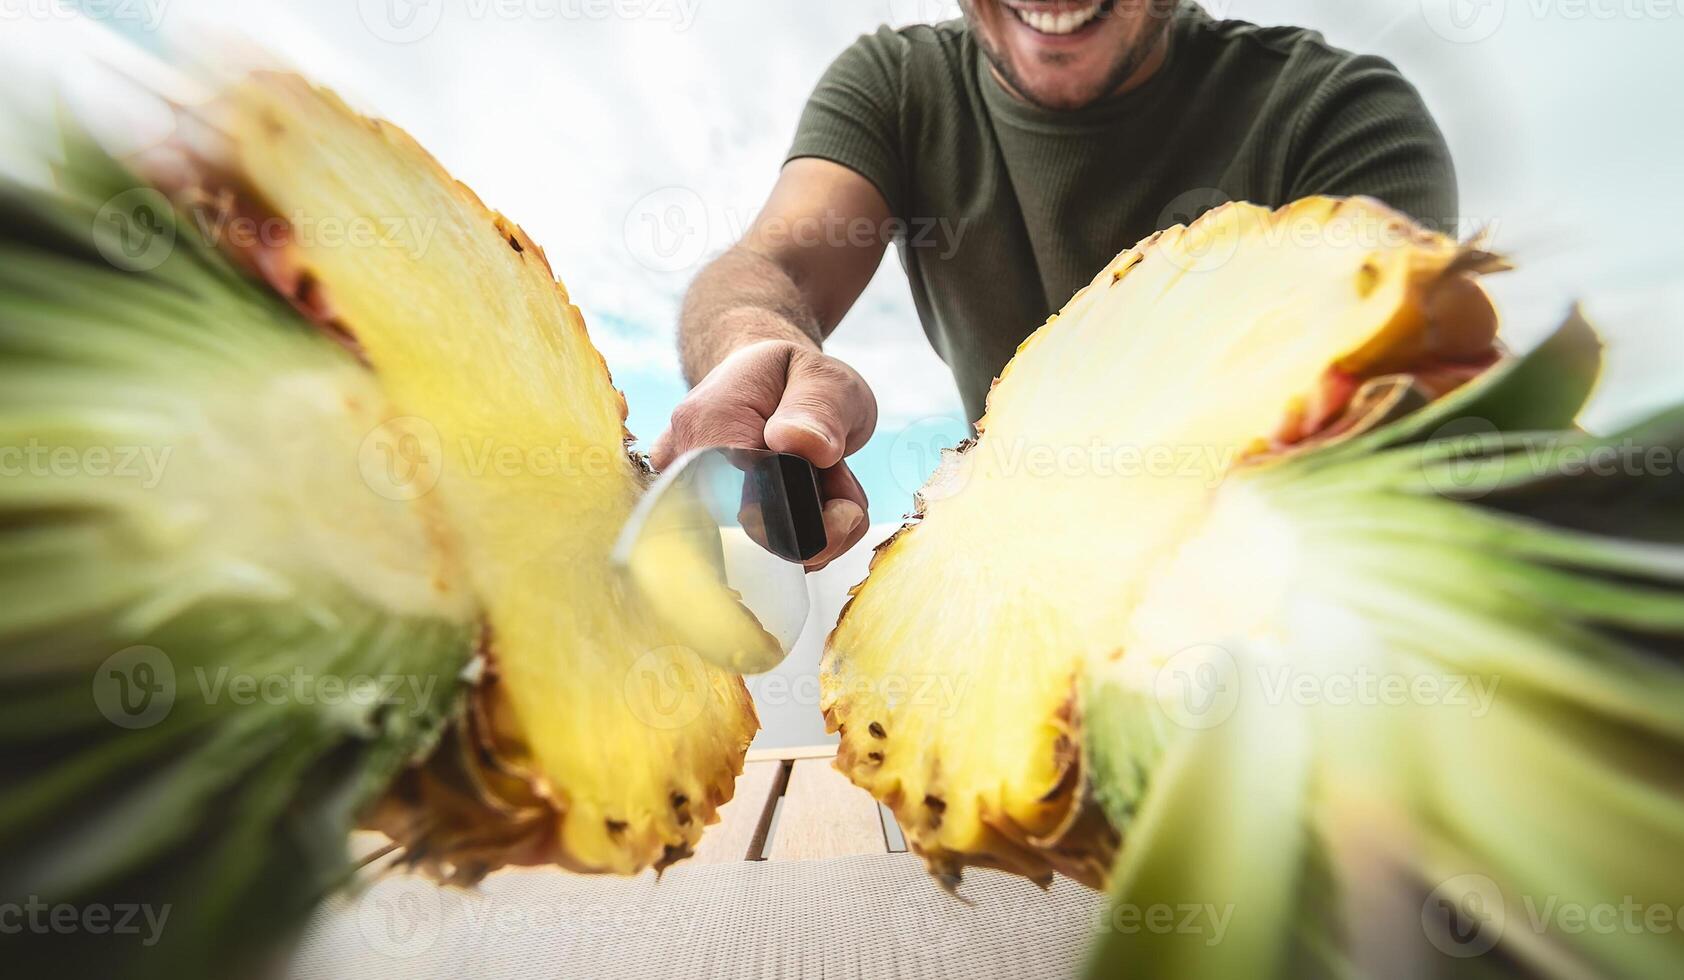 Jeune souriant homme Coupe ananas - proche en haut Masculin main en portant tranchant couteau en train de préparer tropical Frais des fruits - gens mode de vie et en bonne santé exotique nourriture concept photo